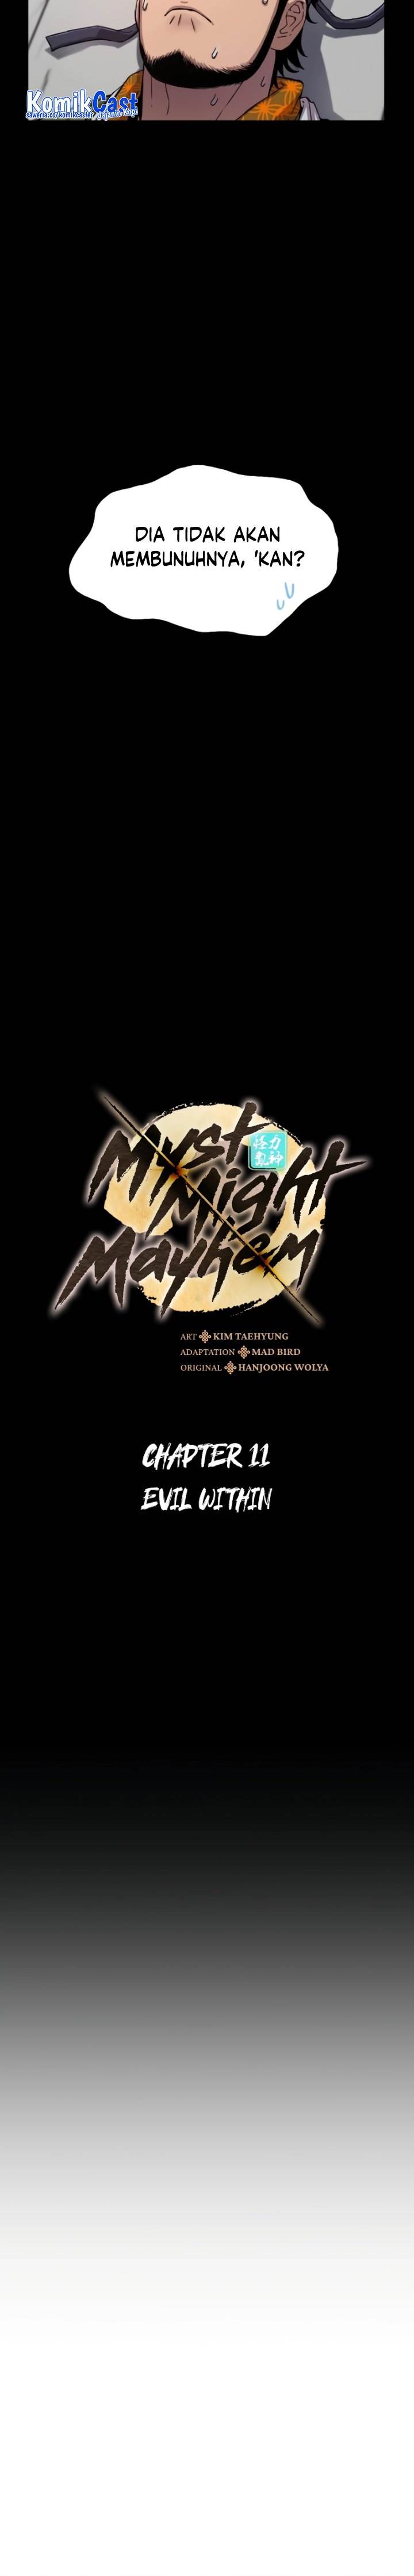 Myst, Might, Mayhem Chapter 11